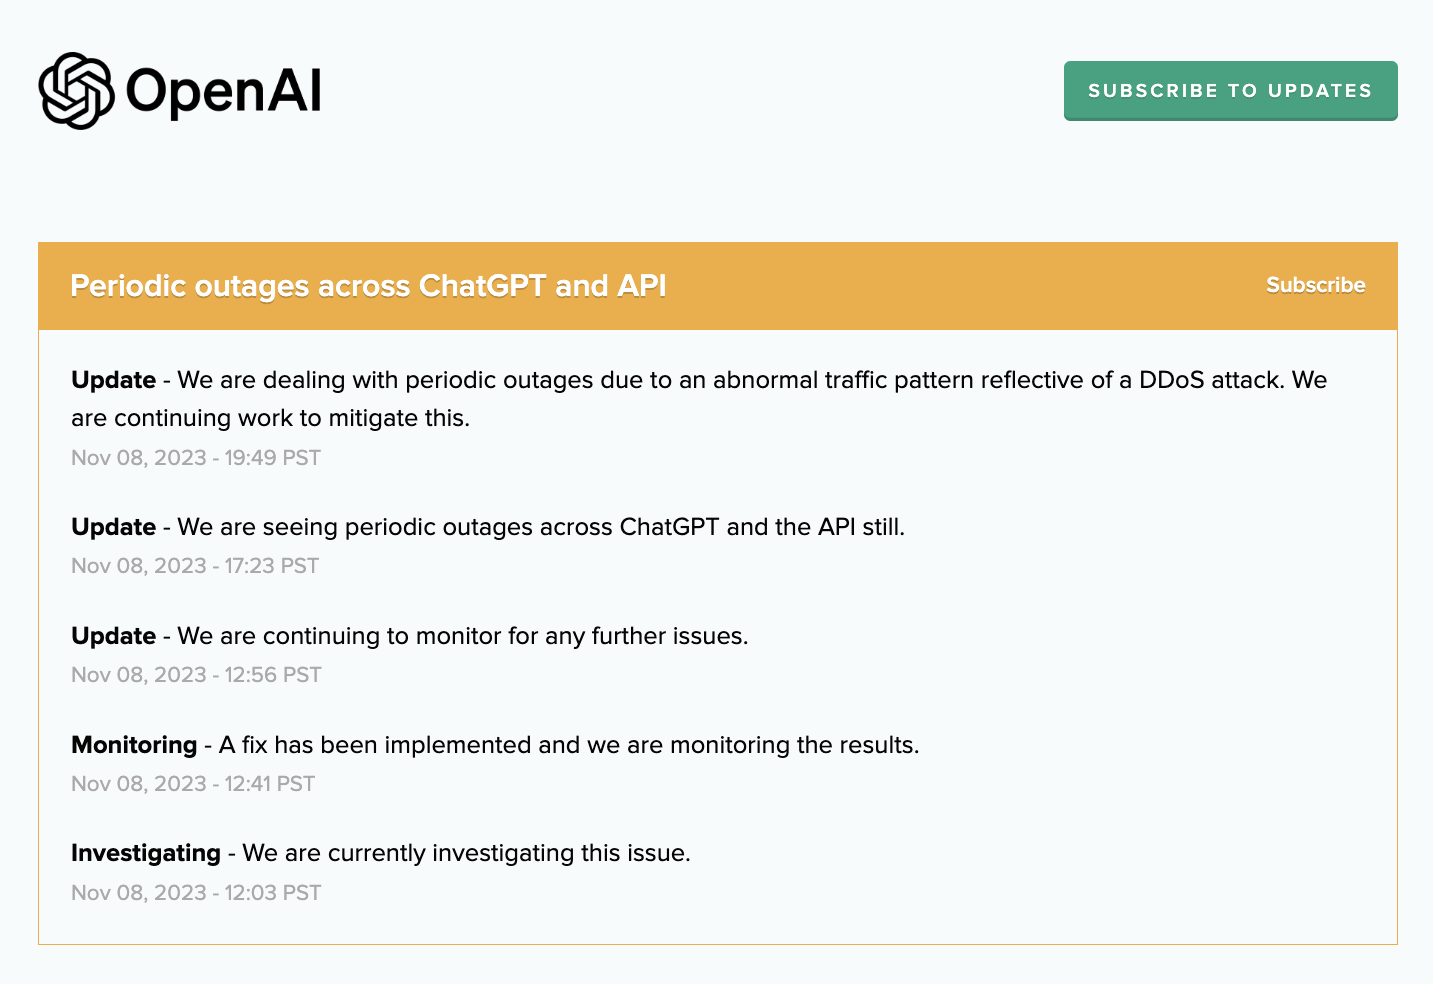 OpenAI resuelve las interrupciones periódicas de ChatGPT y API causadas por ataques DDoS